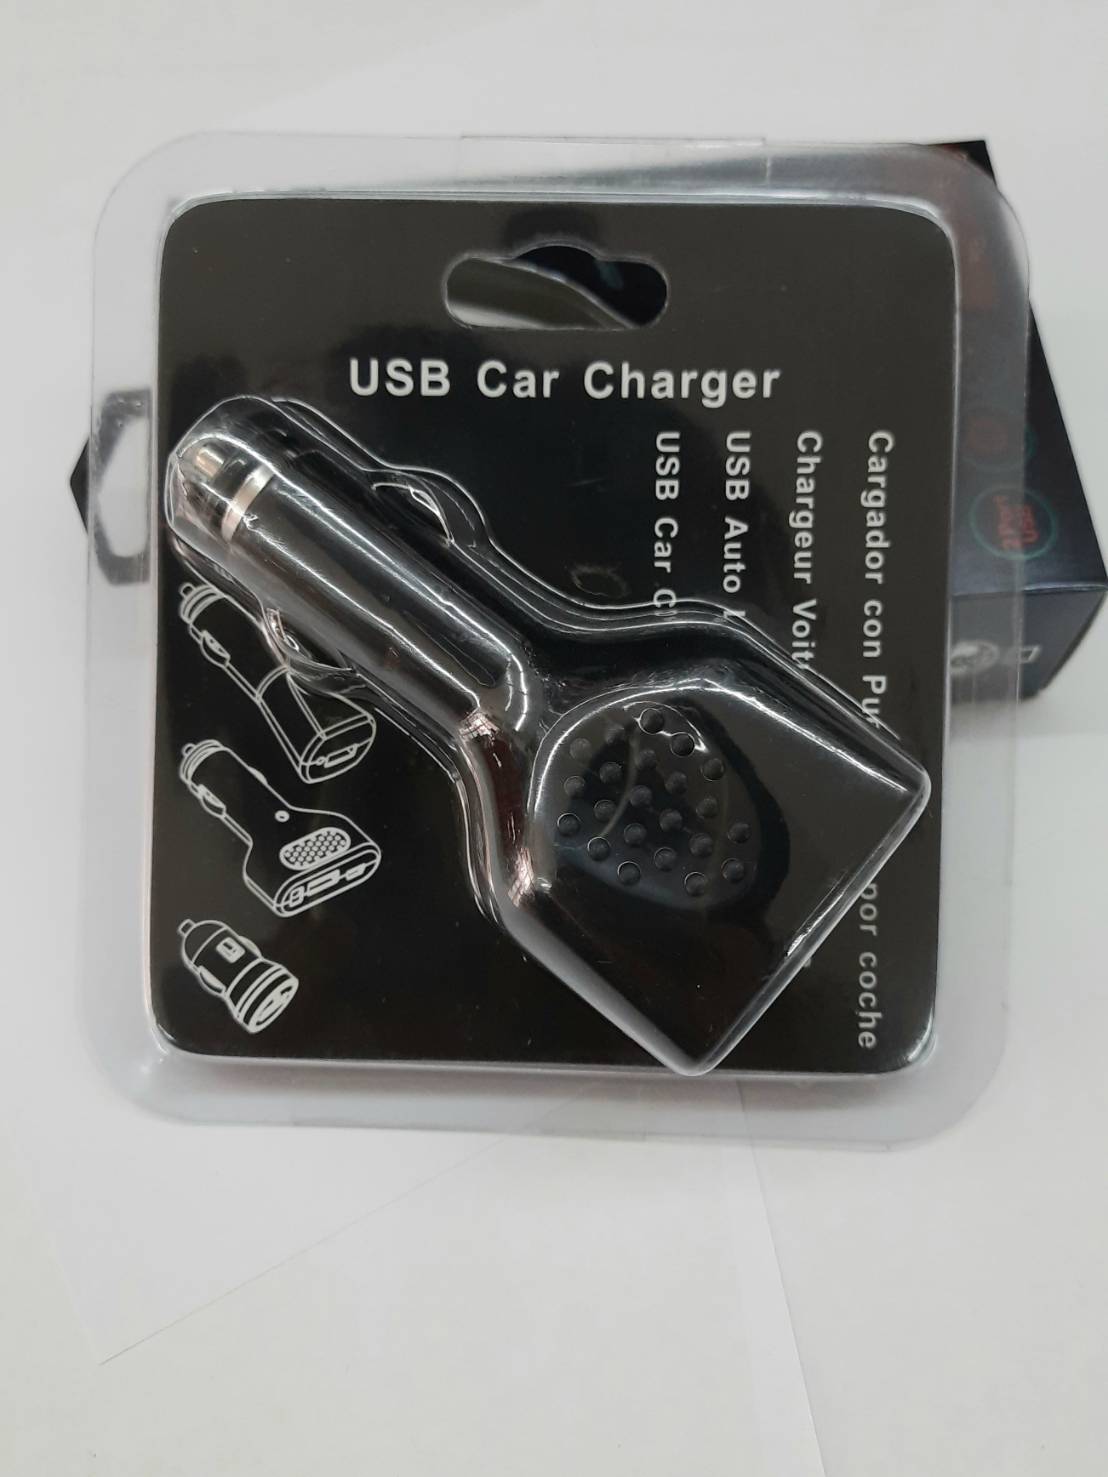 เพิ่มช่องชาร์จในรถ USB 4 ช่อง 5V 2A สามารถใช้ได้กับรถทุกคัน คุณภาพดี แข็งแรงทนทาน